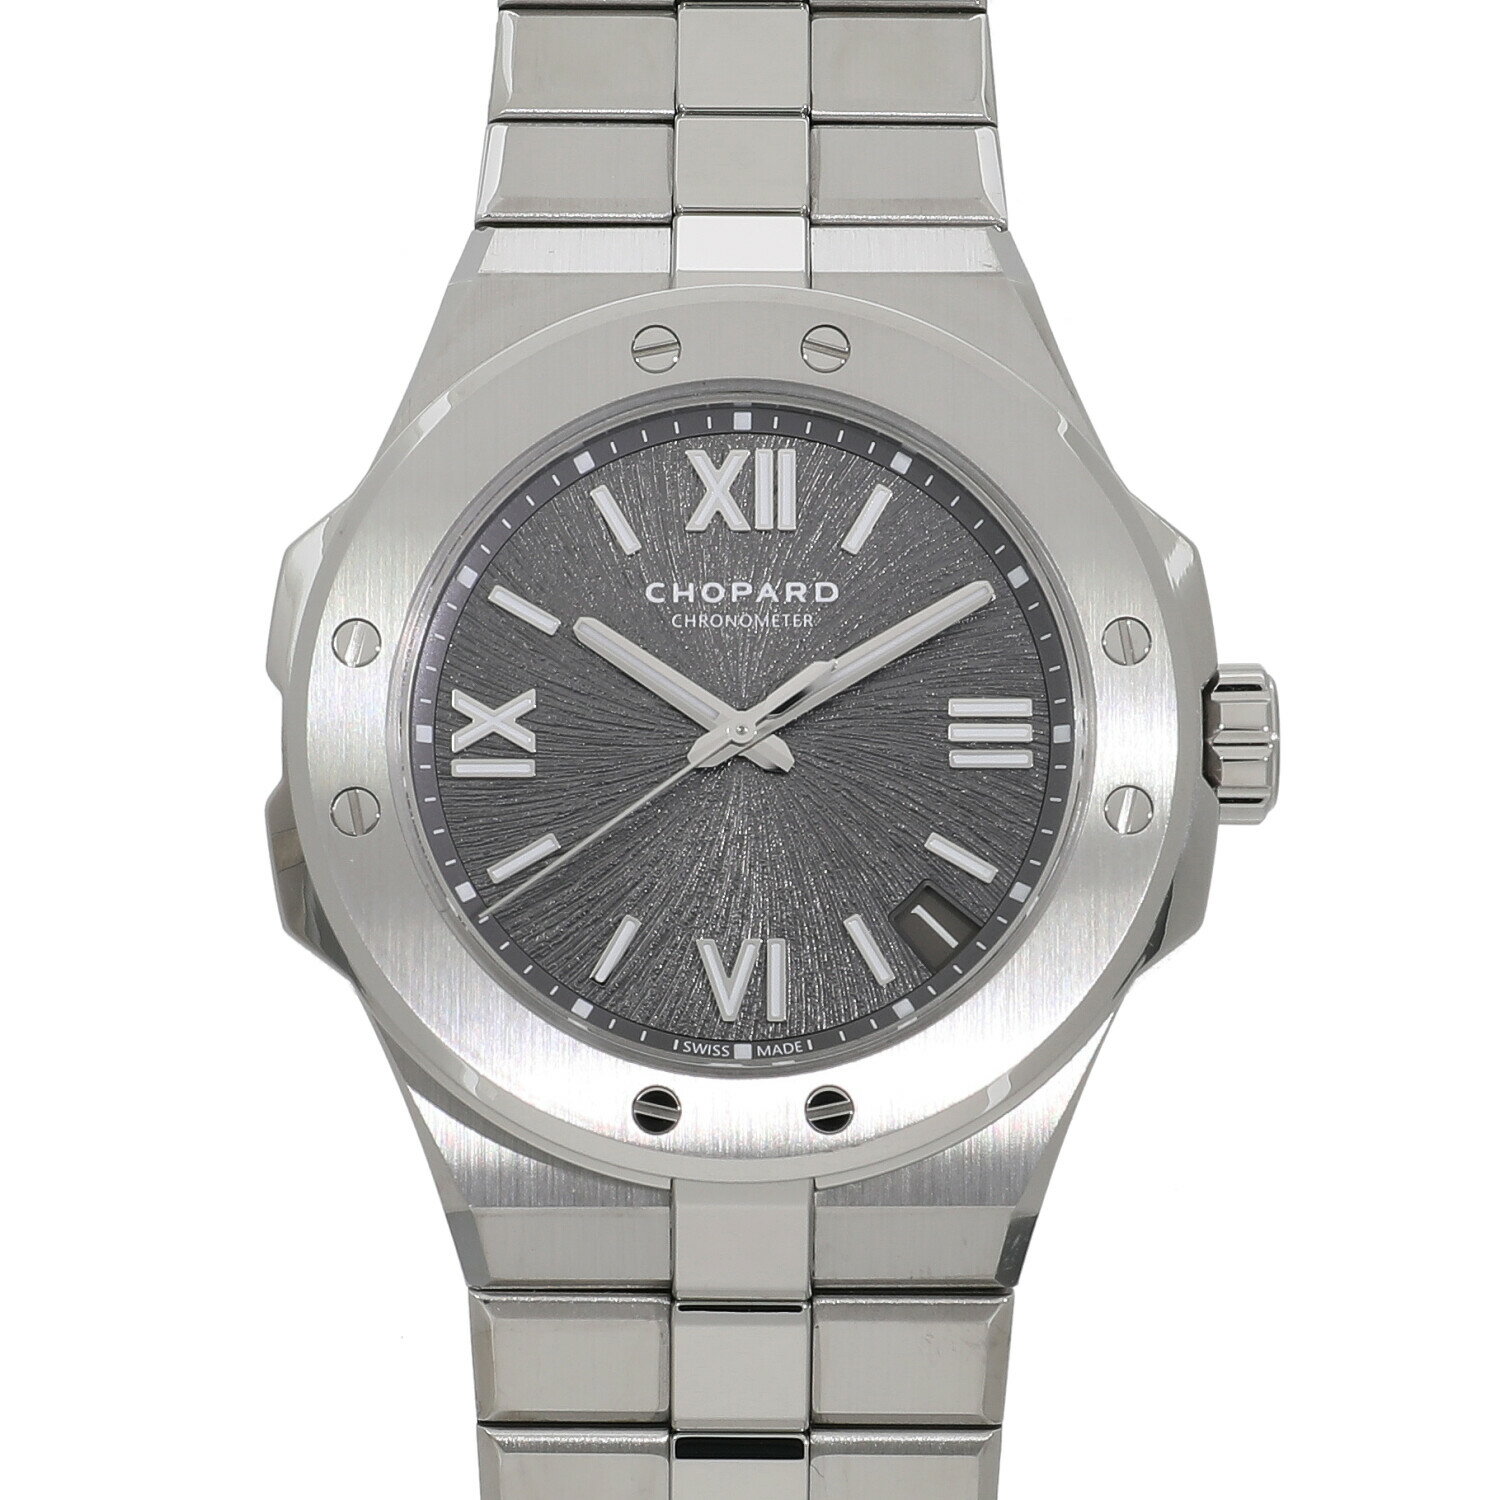  ショパール アルパイン イーグル 298600-3002 新品 メンズ 送料無料 腕時計